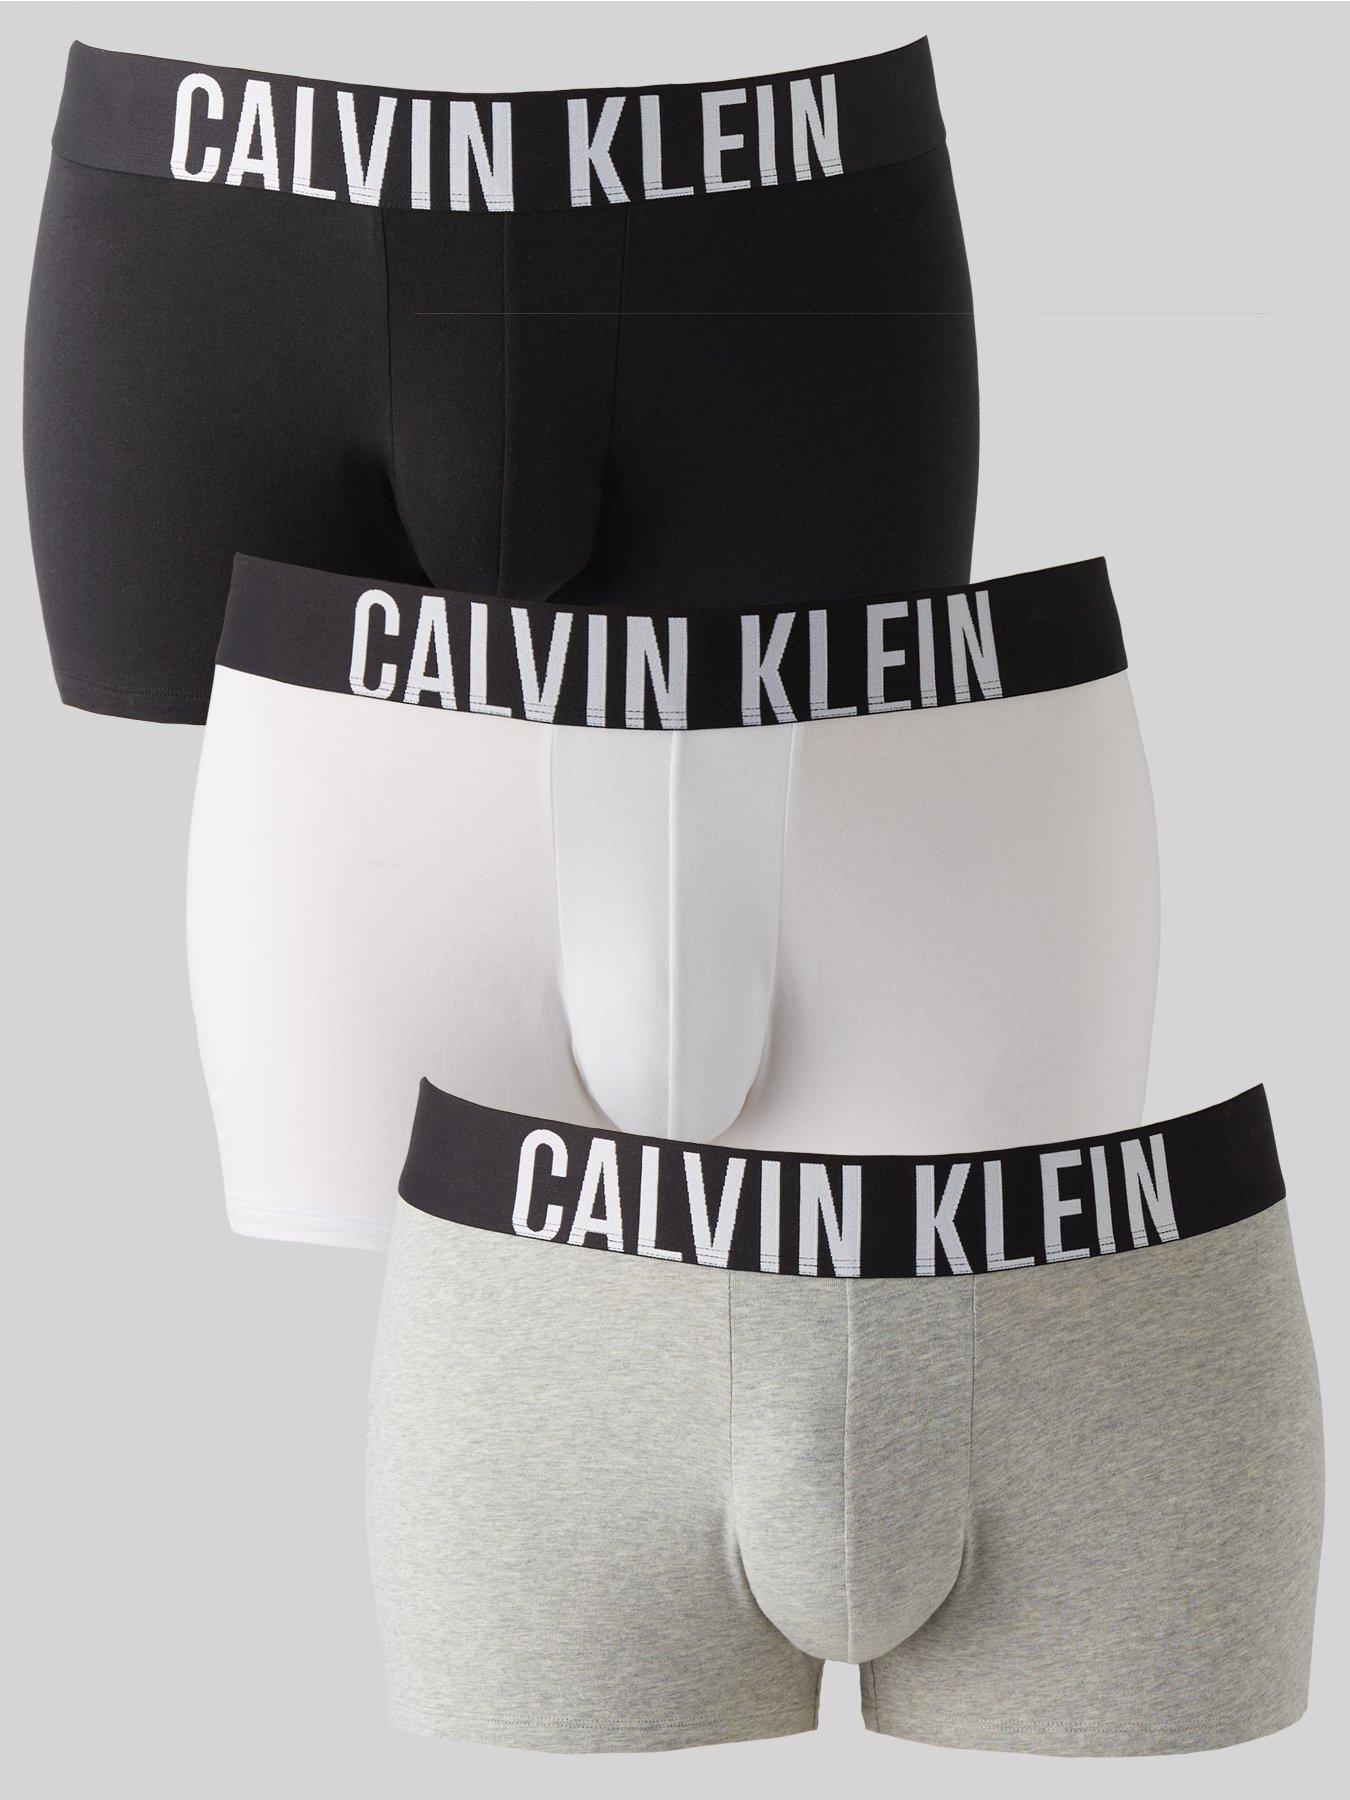 Calvin Klein Modern Cotton Stretch Plus Boxer Briefs (3 Pack) - Black